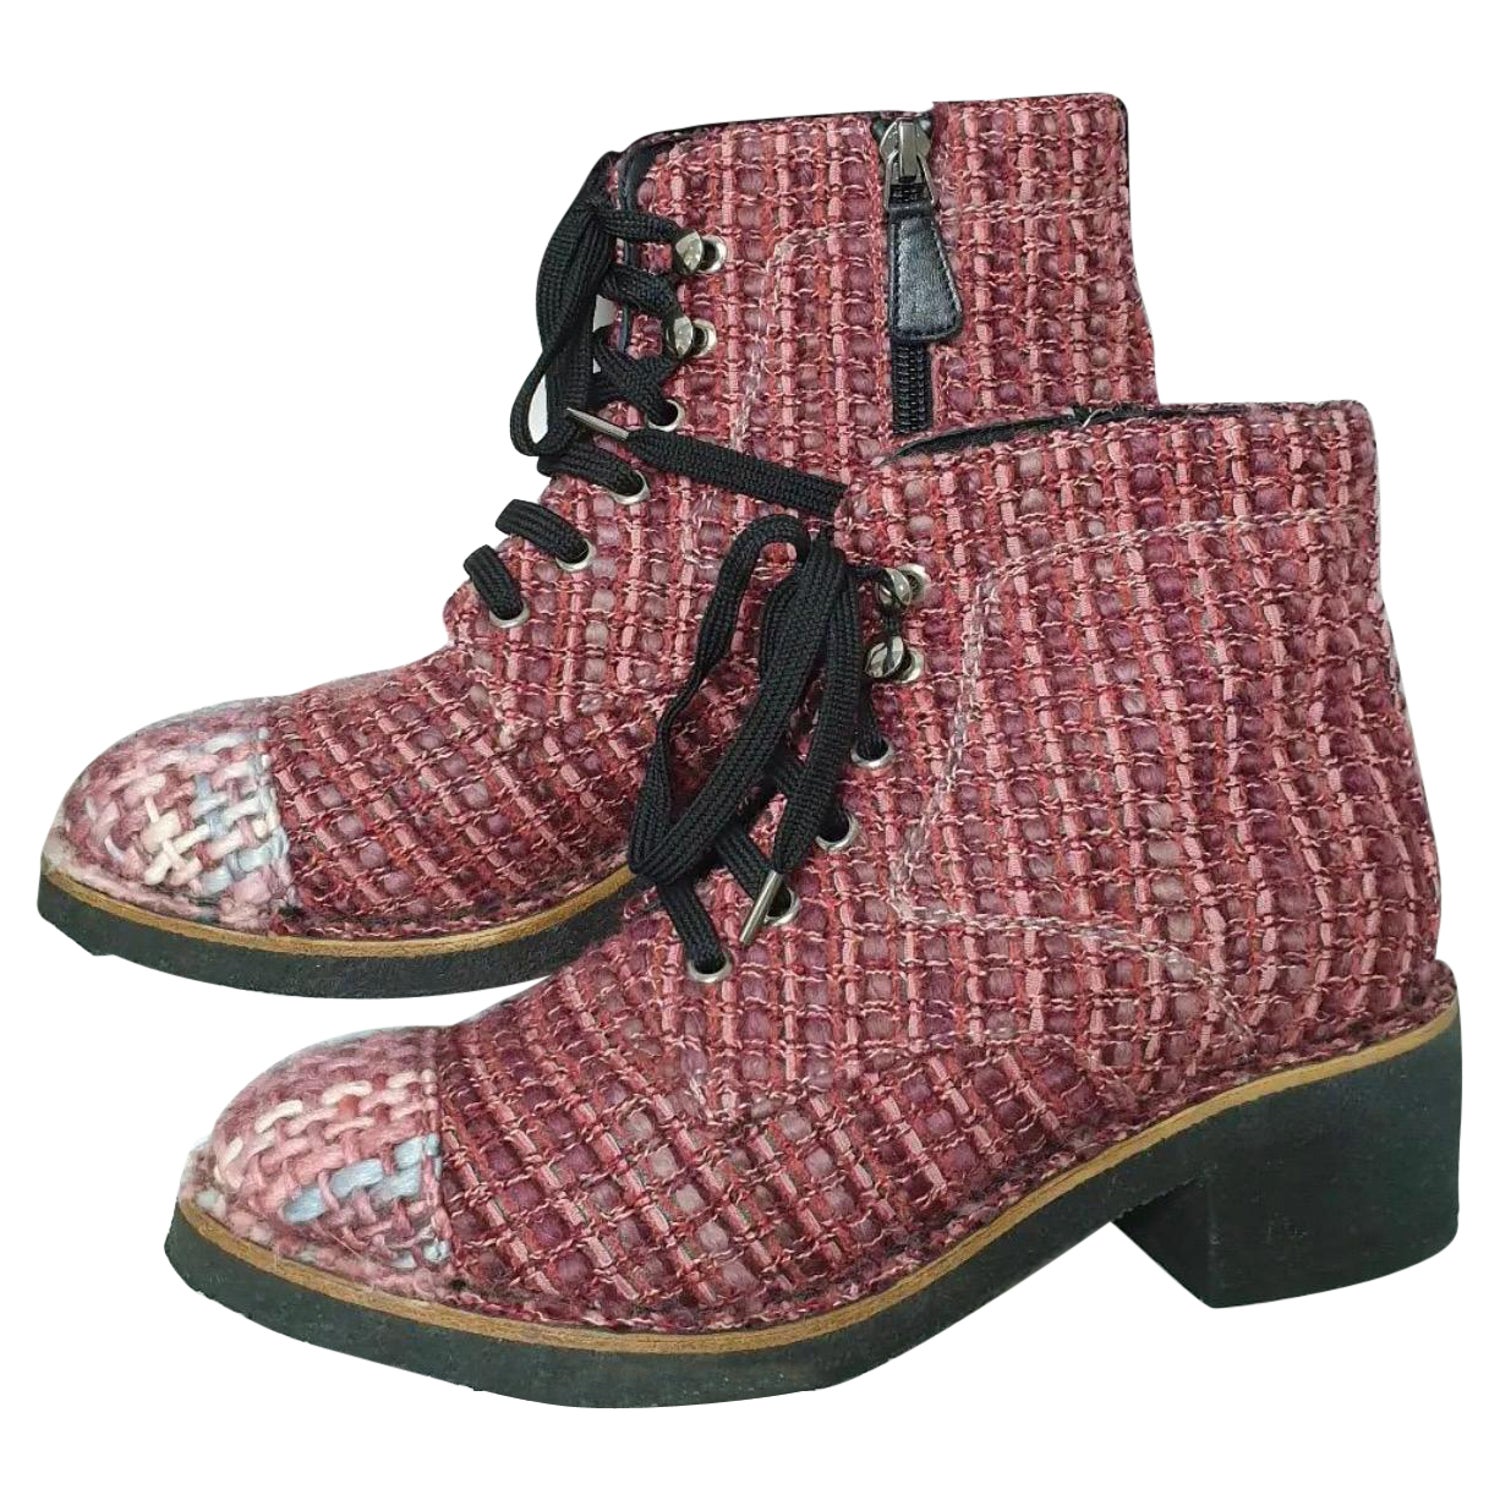 Velvet lace up boots